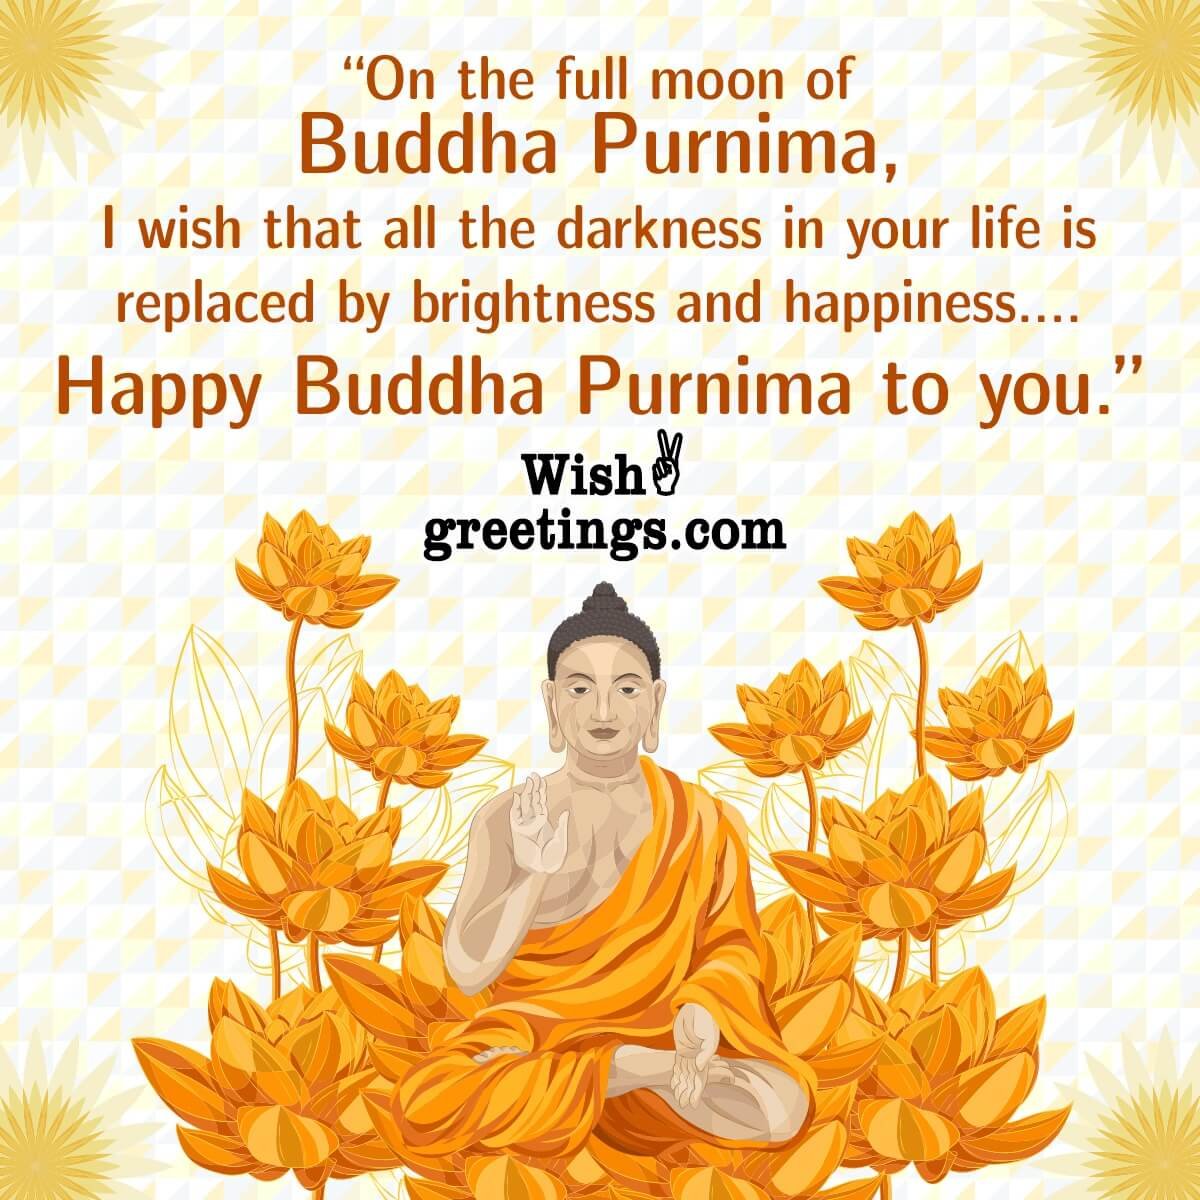 Happy Buddha Purnima Wish Image